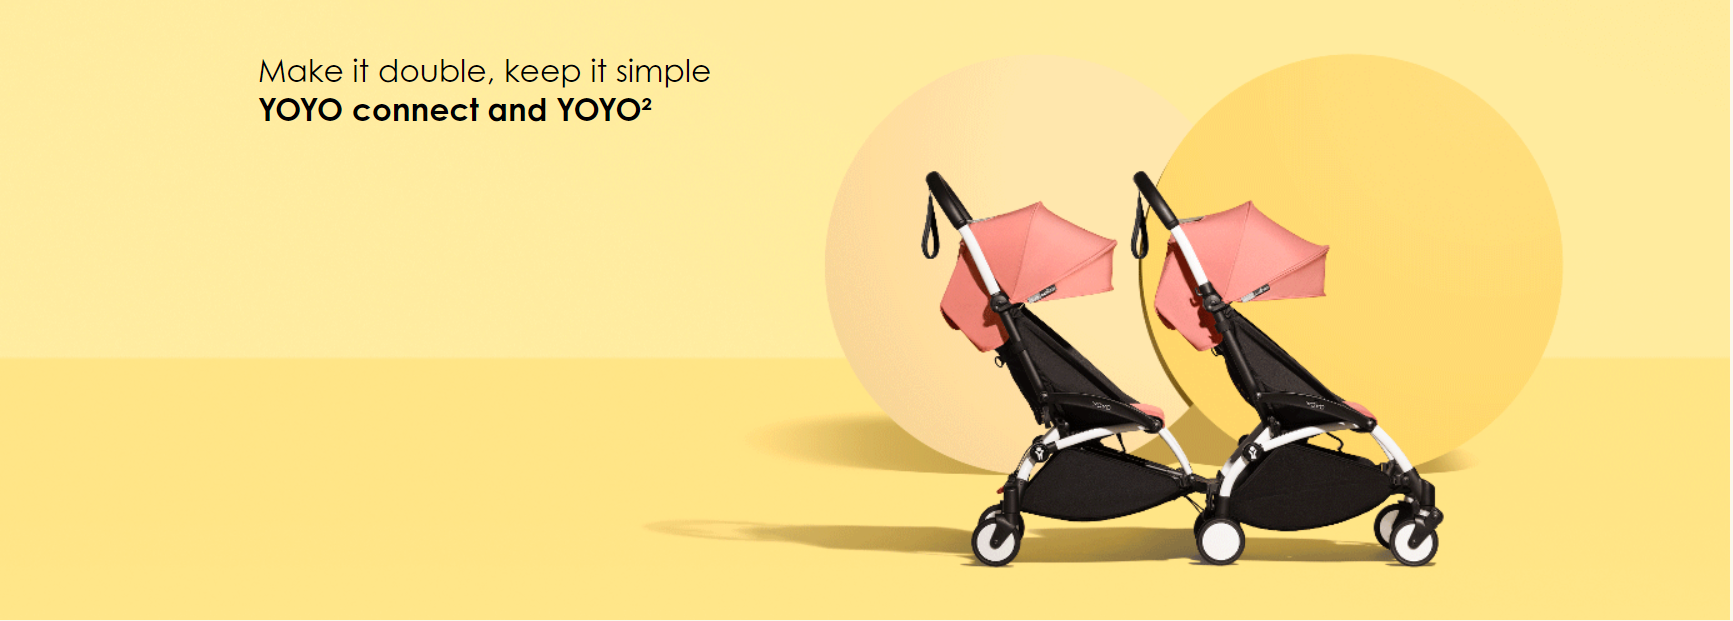 YOYO Connect – מוצר חדש ומהפכני המהווה את הפתרון האולטימטיבי לעגלת אחים / תאומים מודולארית